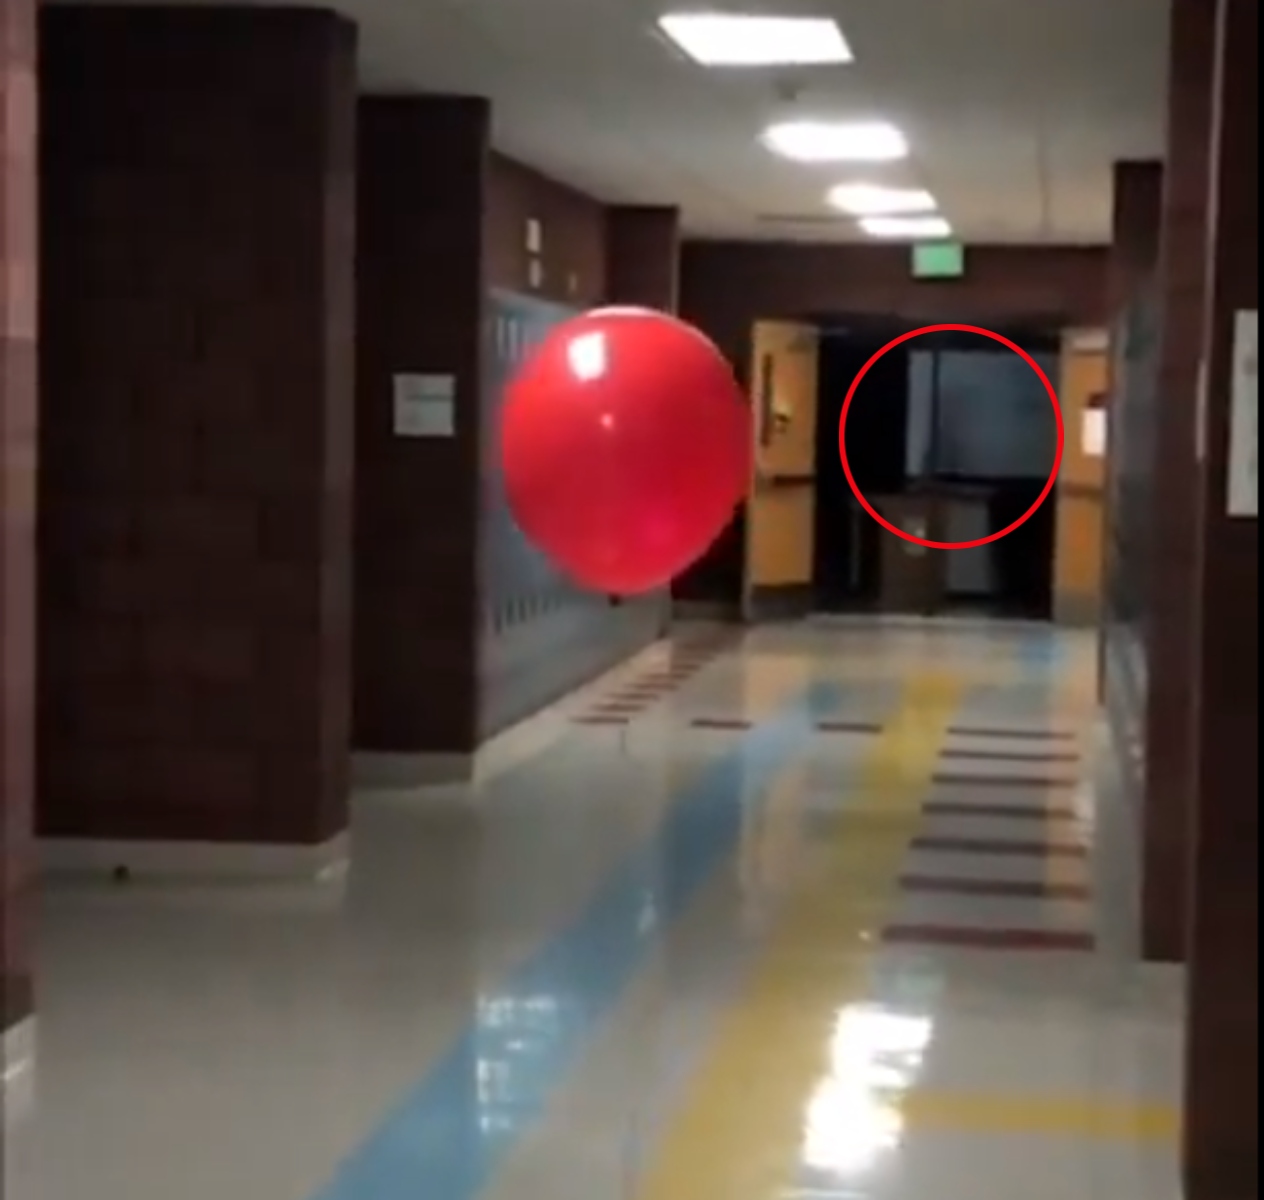  VÍDEO: Funcionário grava aparição “fantasma” em escola e viraliza 